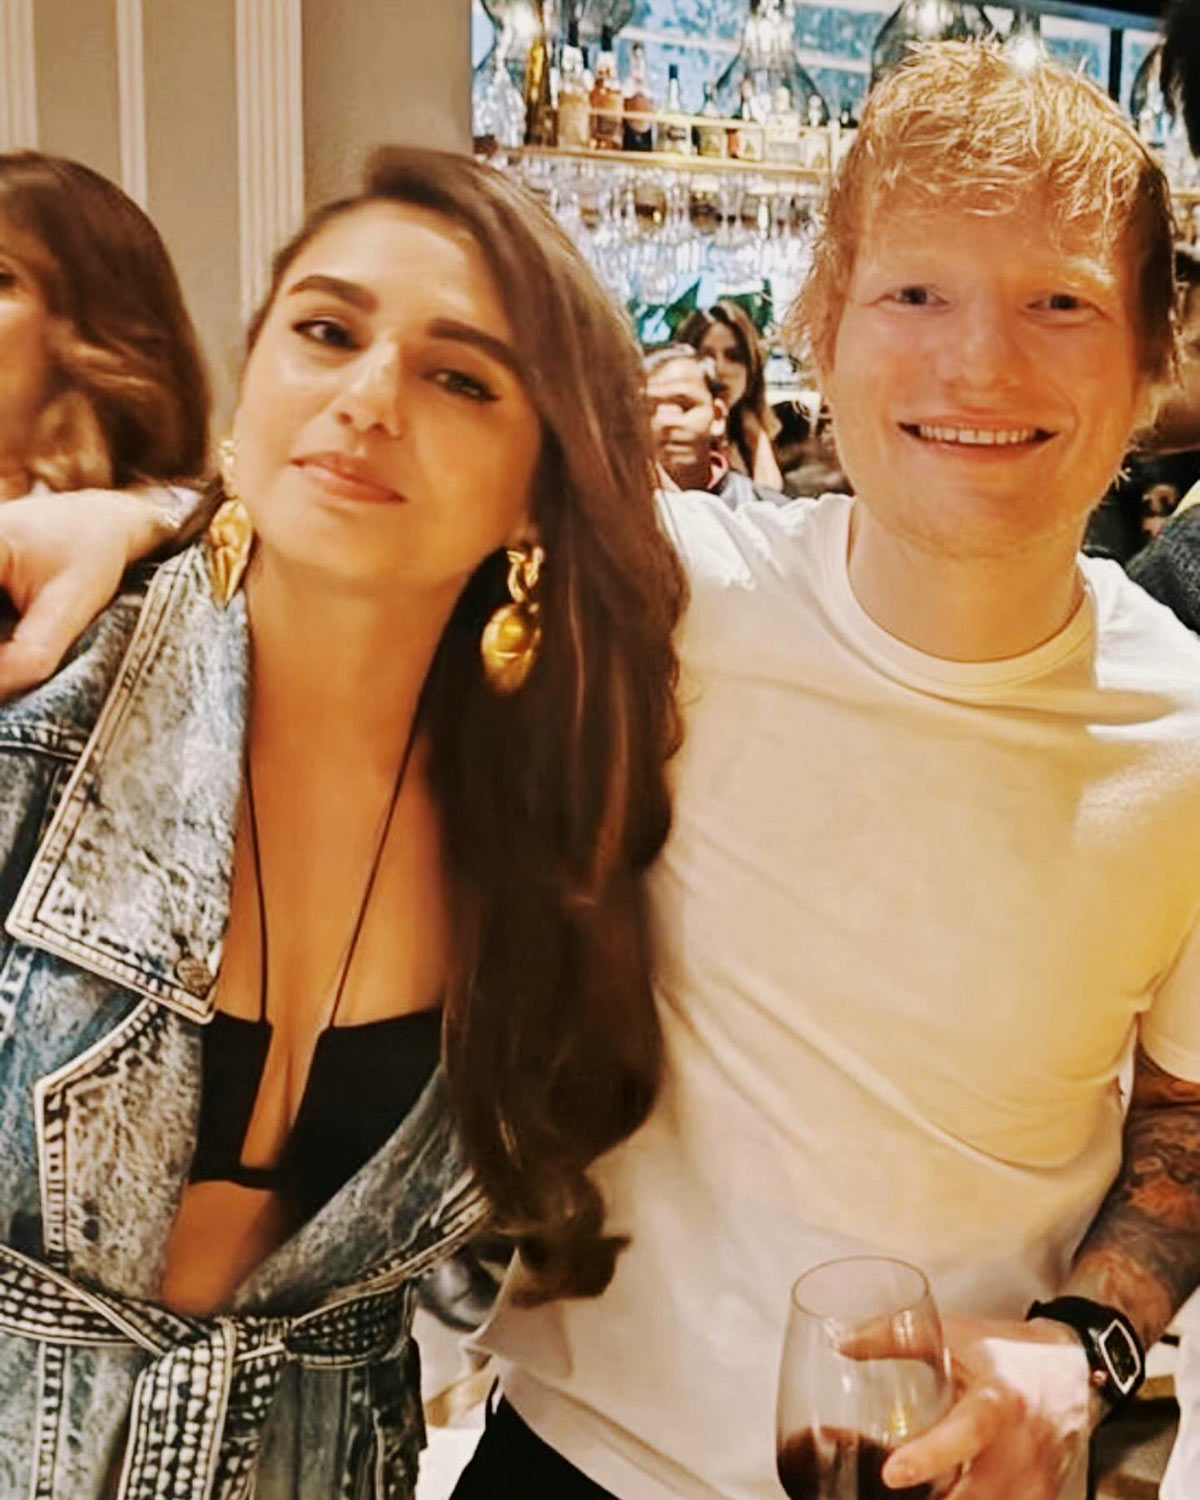 What Ed Sheeran told Huma Qureshi